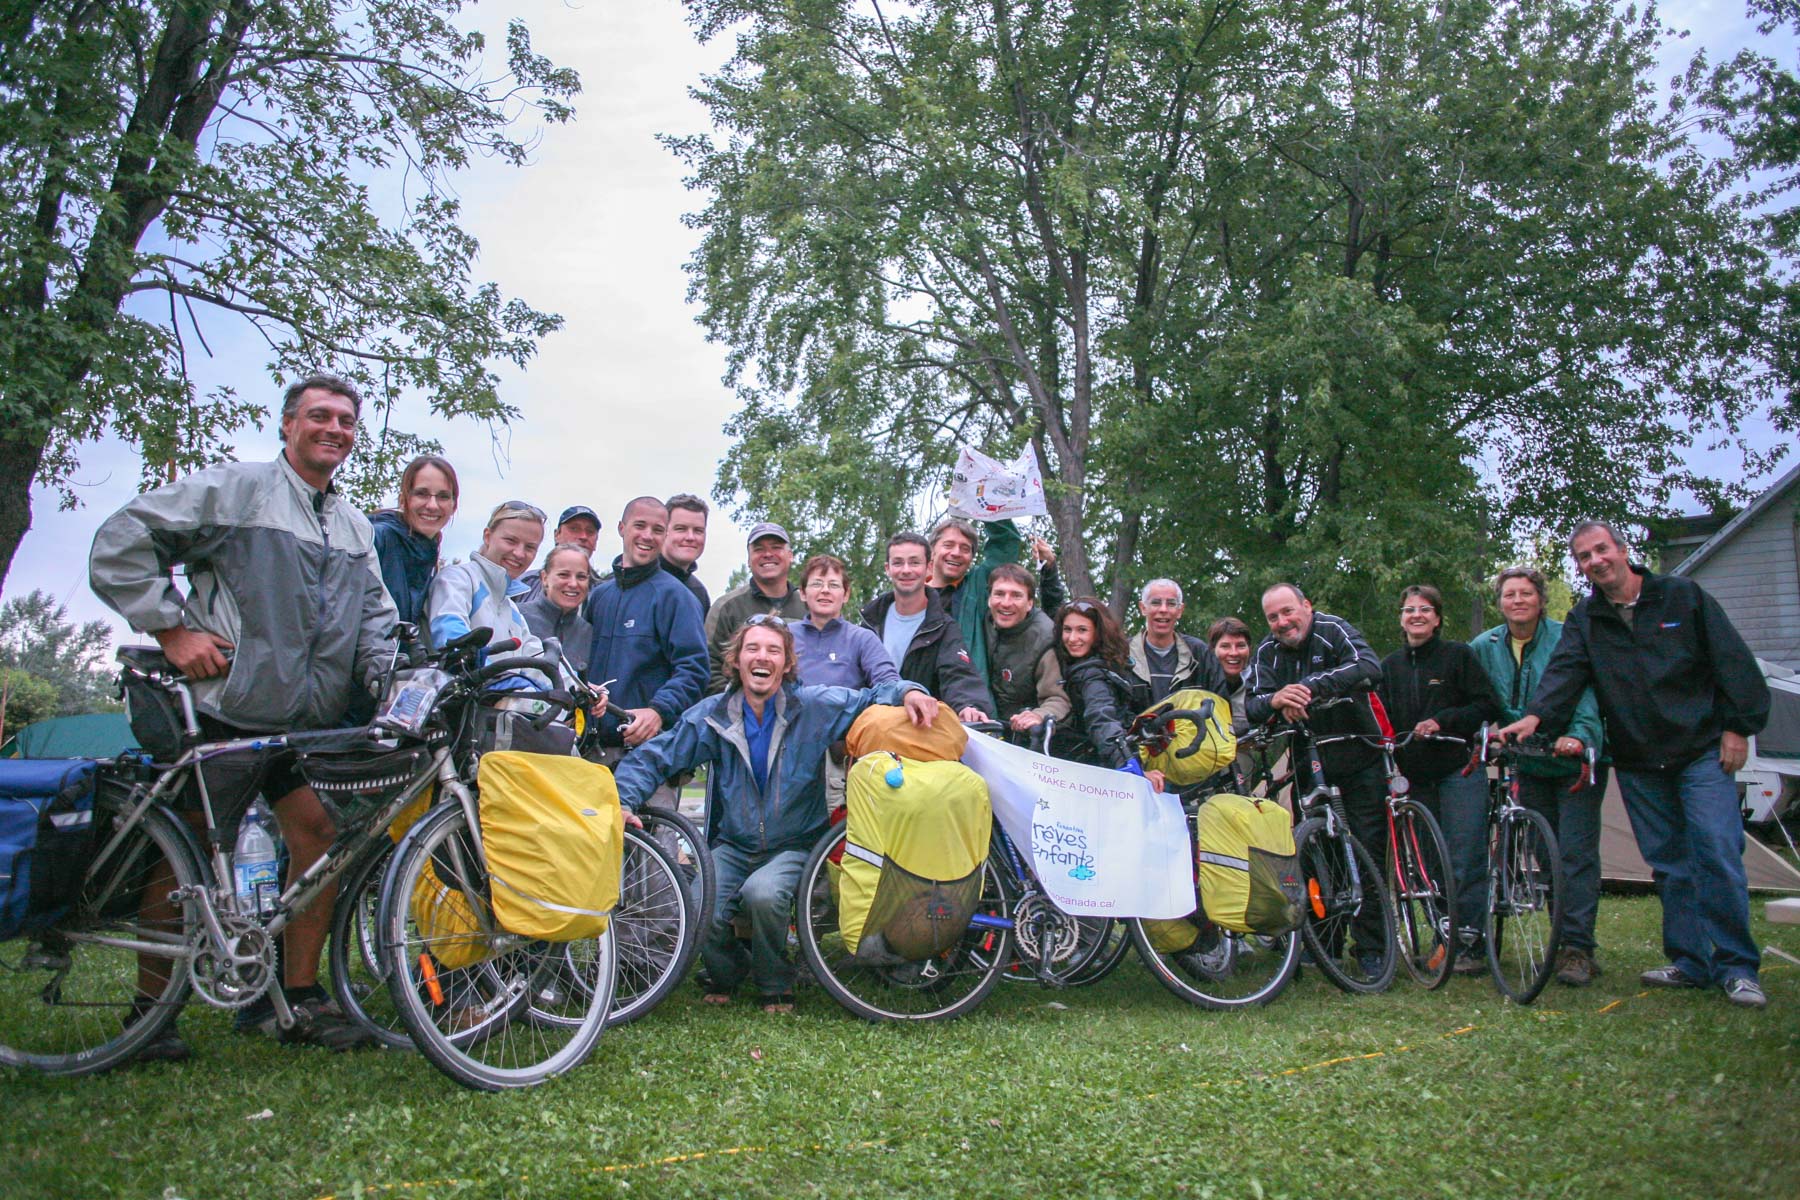 Une vingtaine de personnes, pose pour la photographie avec quelques vélos.